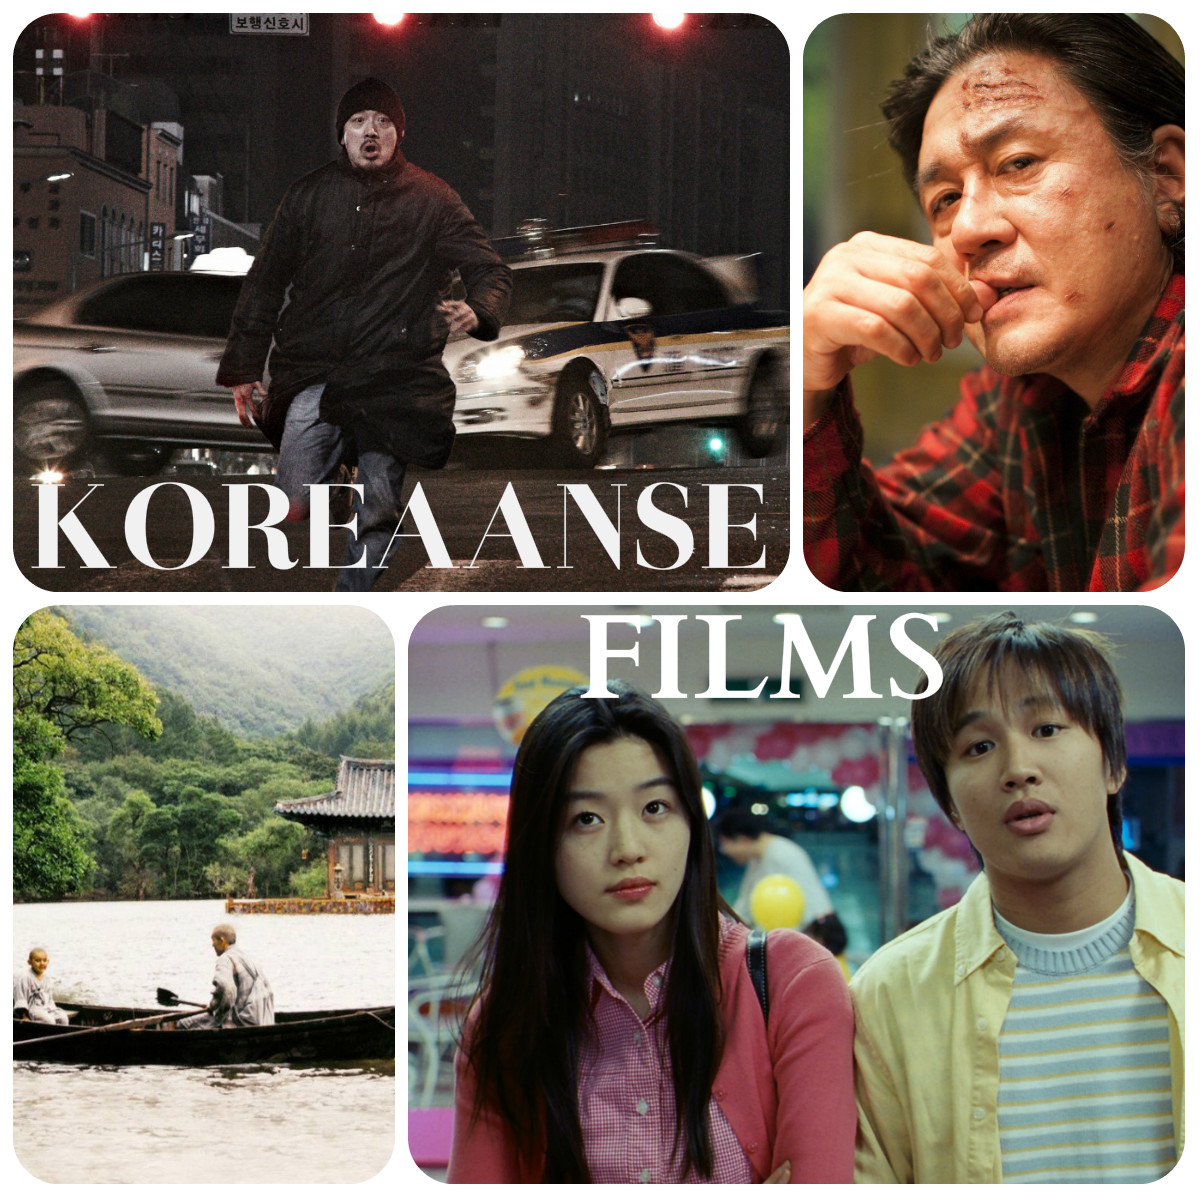 Koreaanse films